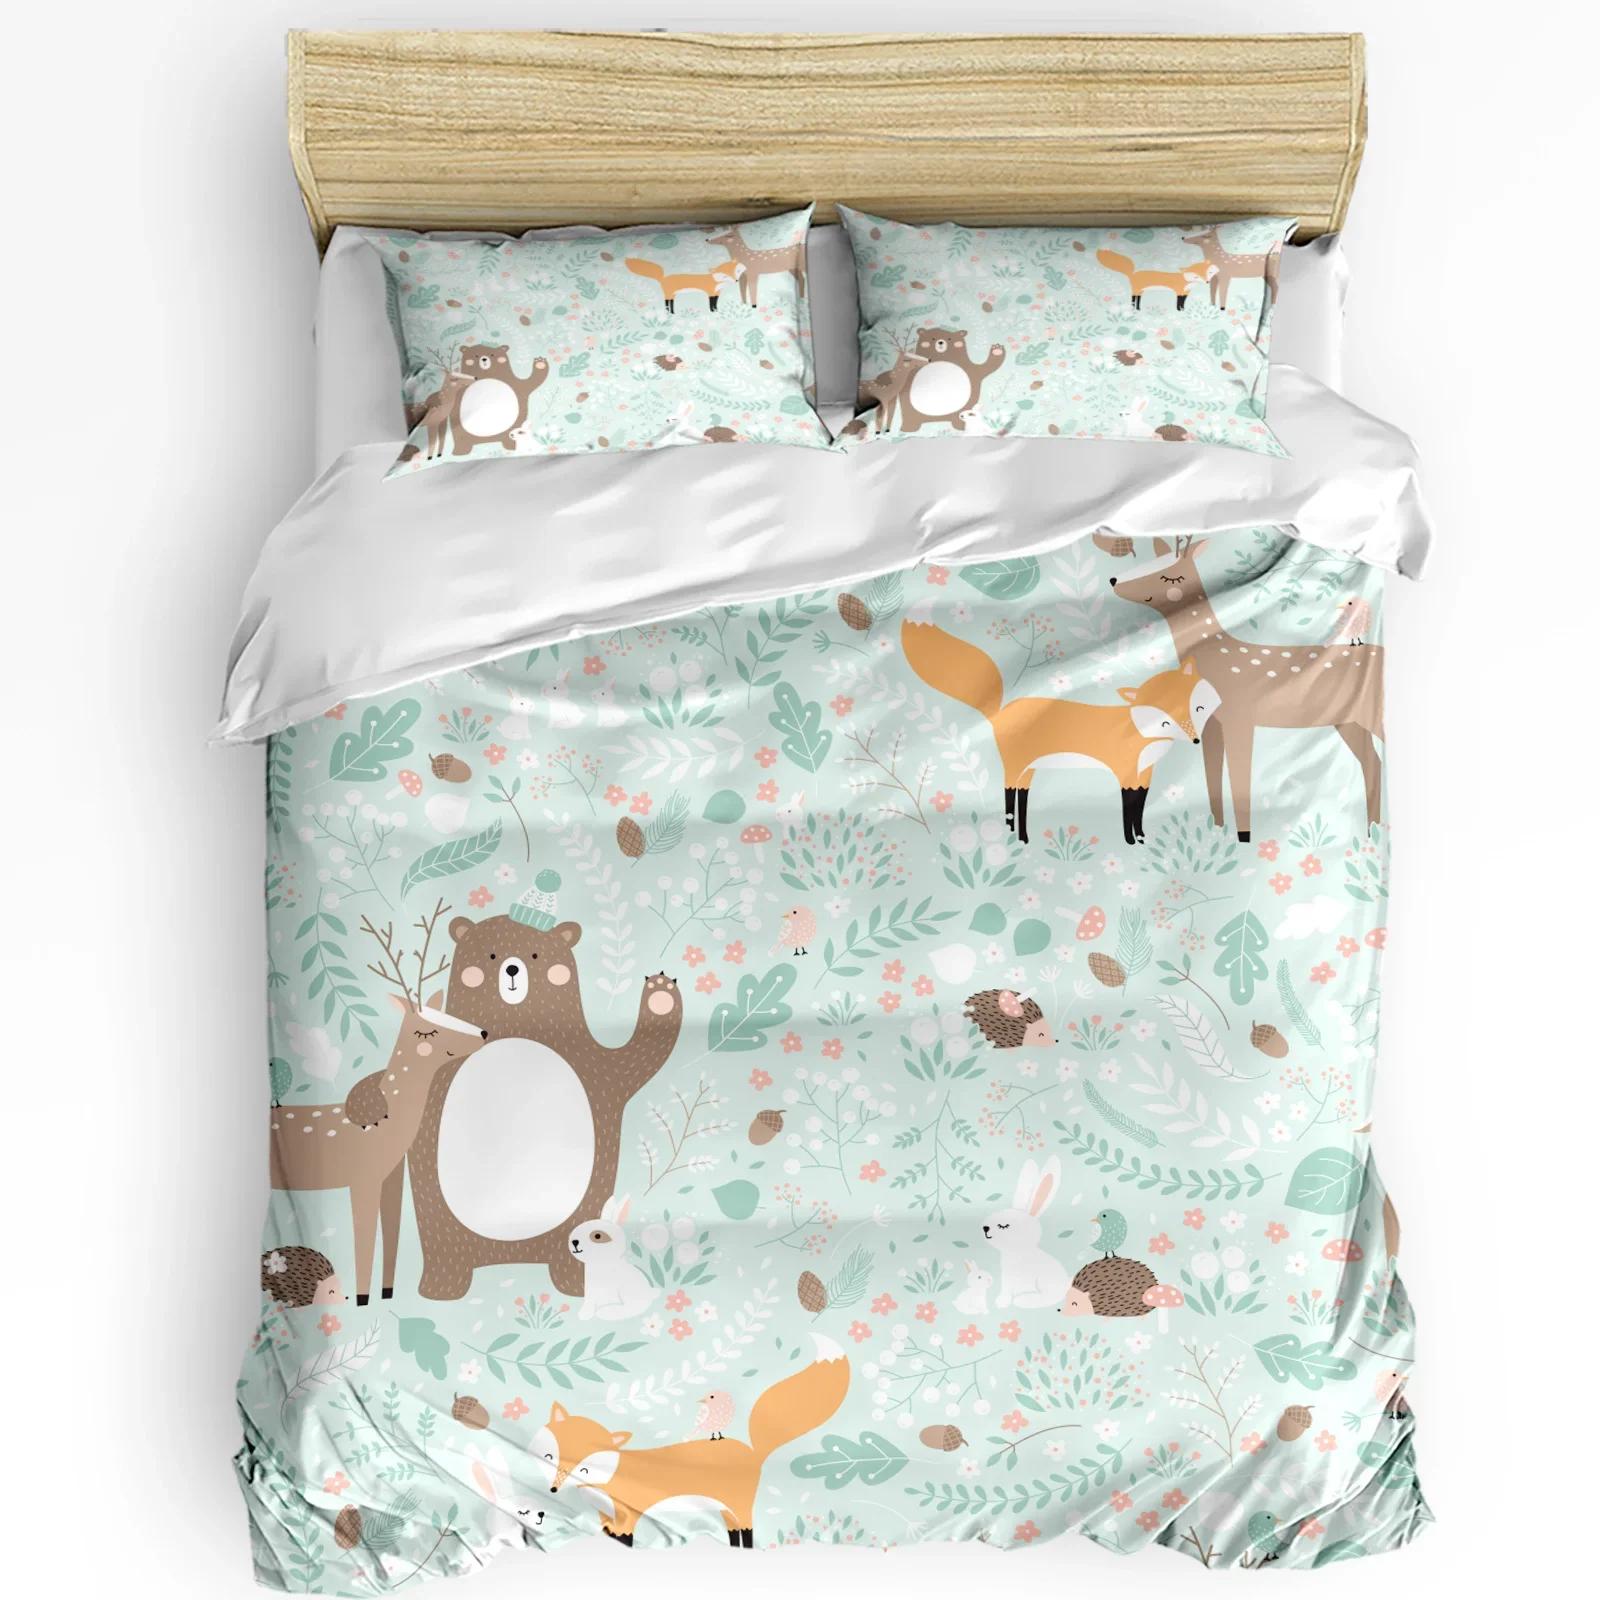 3pcs Bedding Set Forest Animal Cartoon Fox Deer Bear Home Textile Duvet Cover Pillow Case Boy Kid Teen Girl Bedding